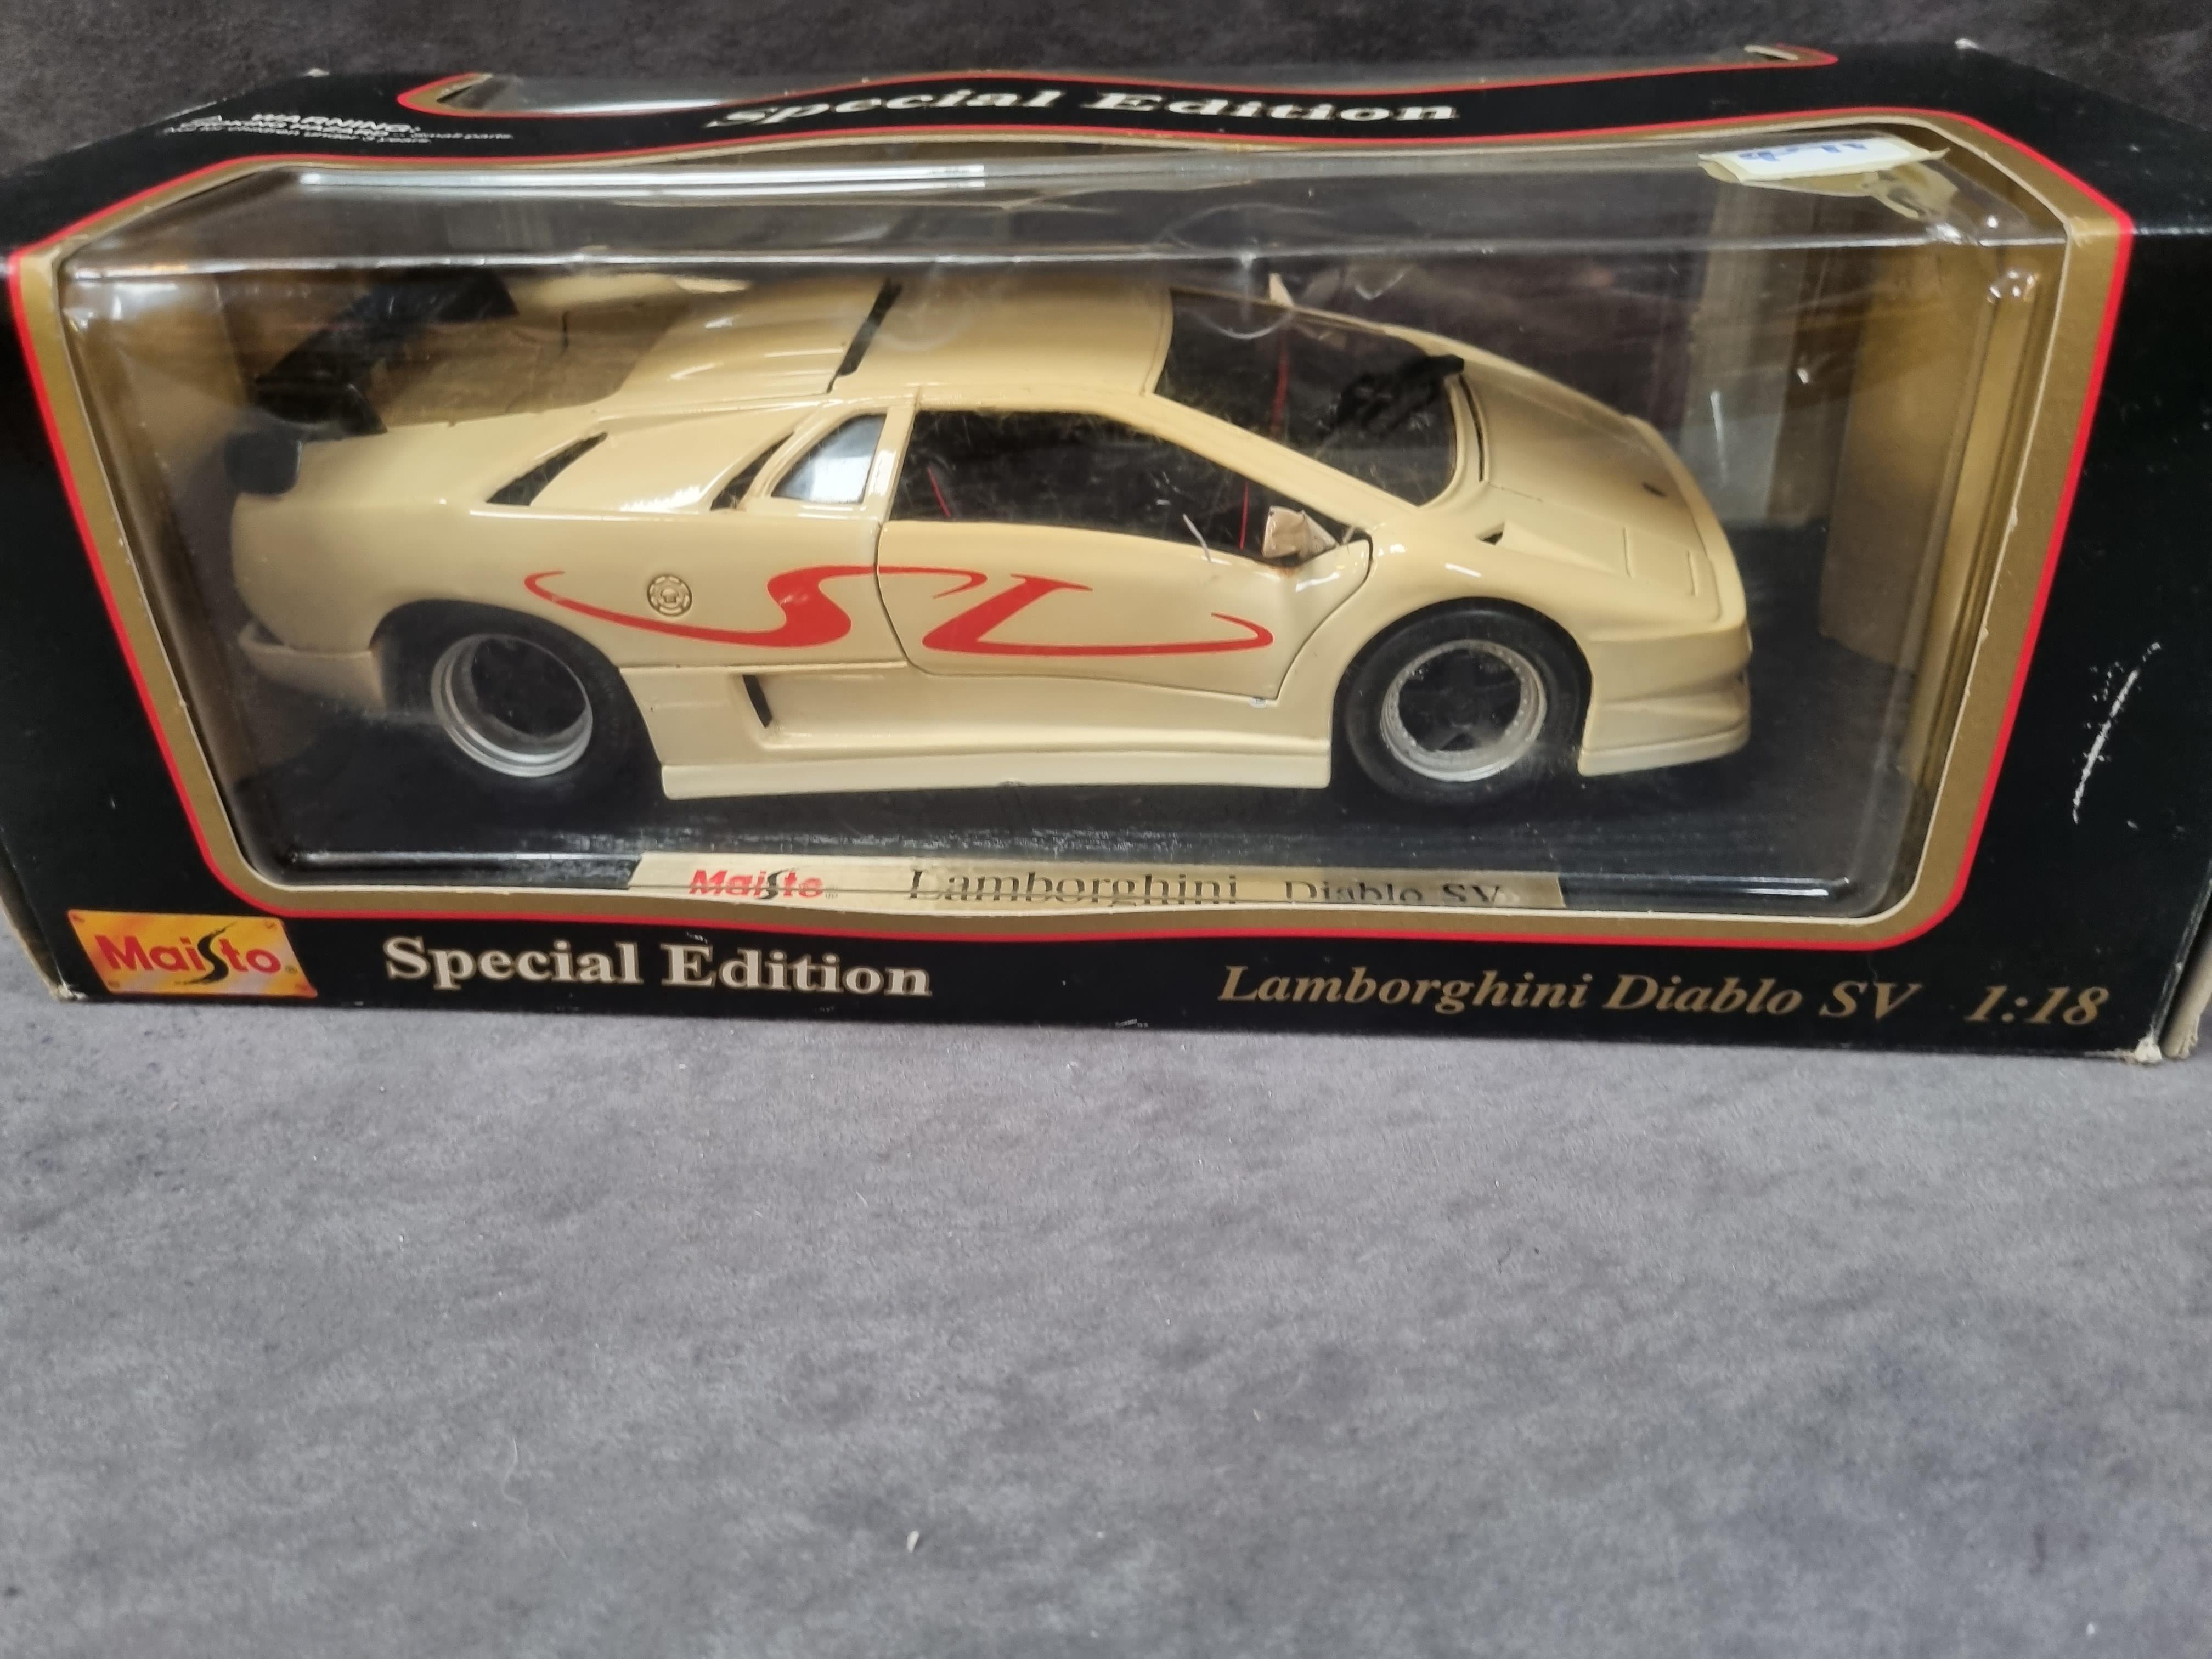 Maisto 1/18 scale diecast #31844 Lamborghini Diablo SV in box